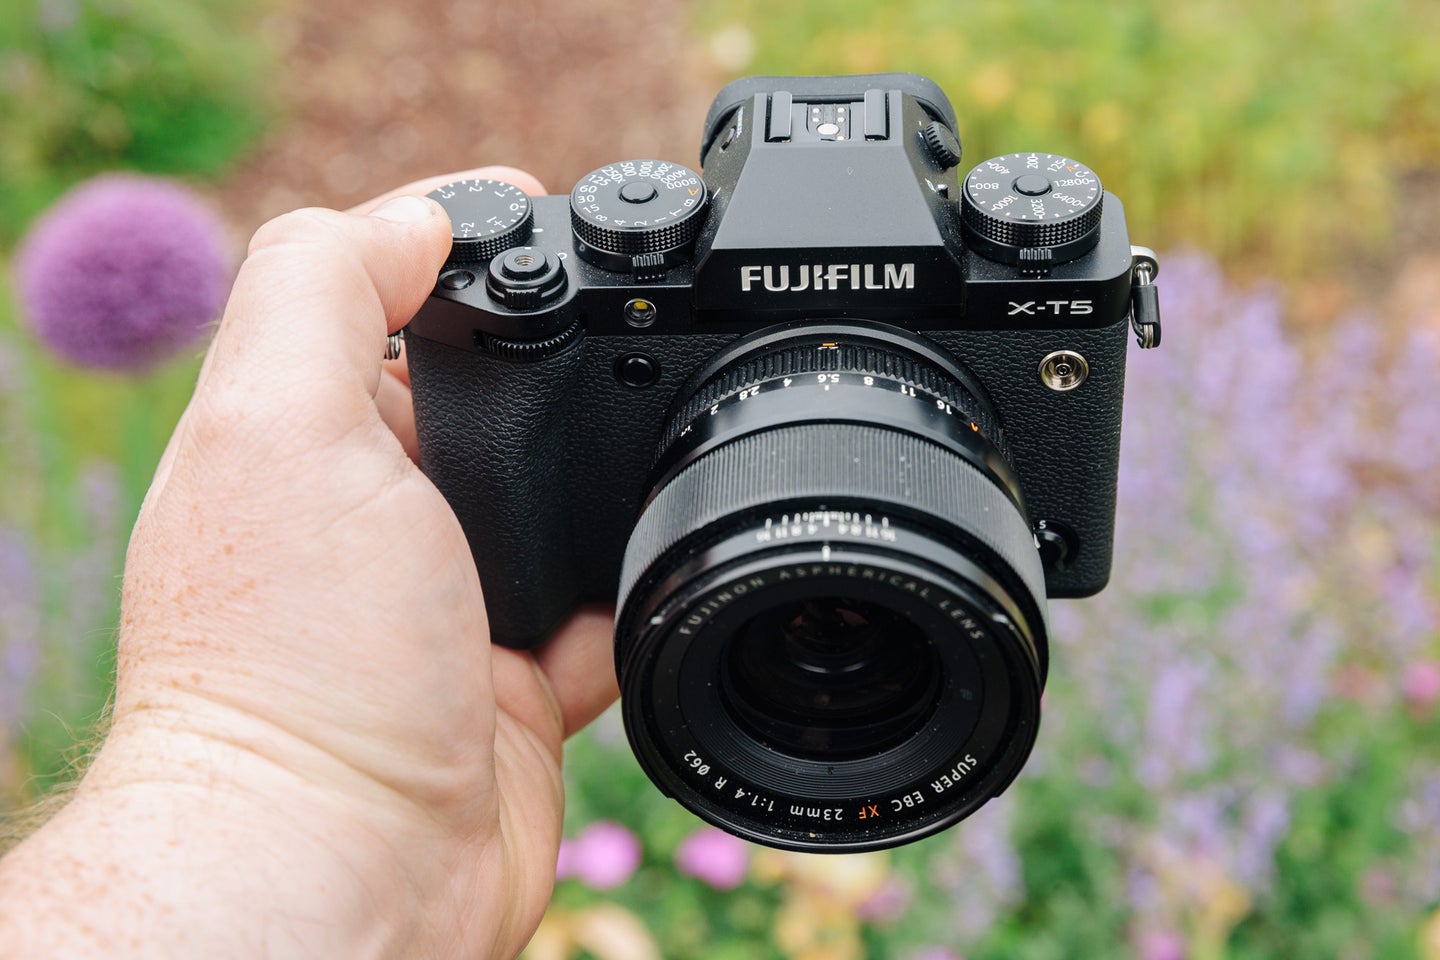 Fujifilm X-T5 Main